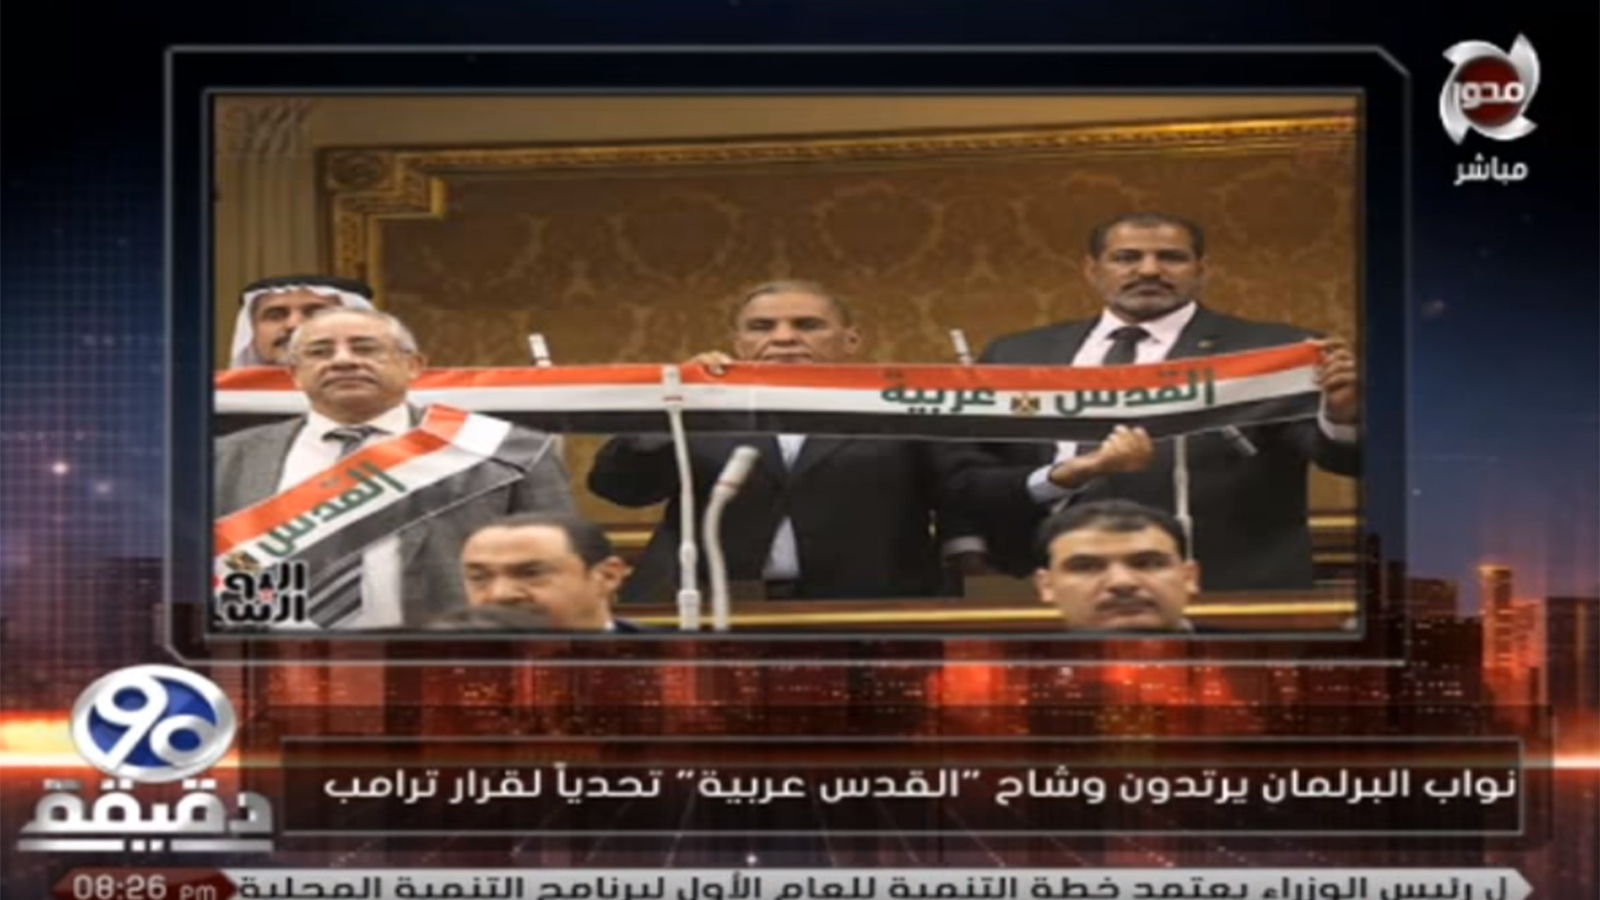 خطوة النواب المصريين وهم يرتدون الوشاح حظيت بنقاش في بعض القنوات المحلية(الإعلام المصري)